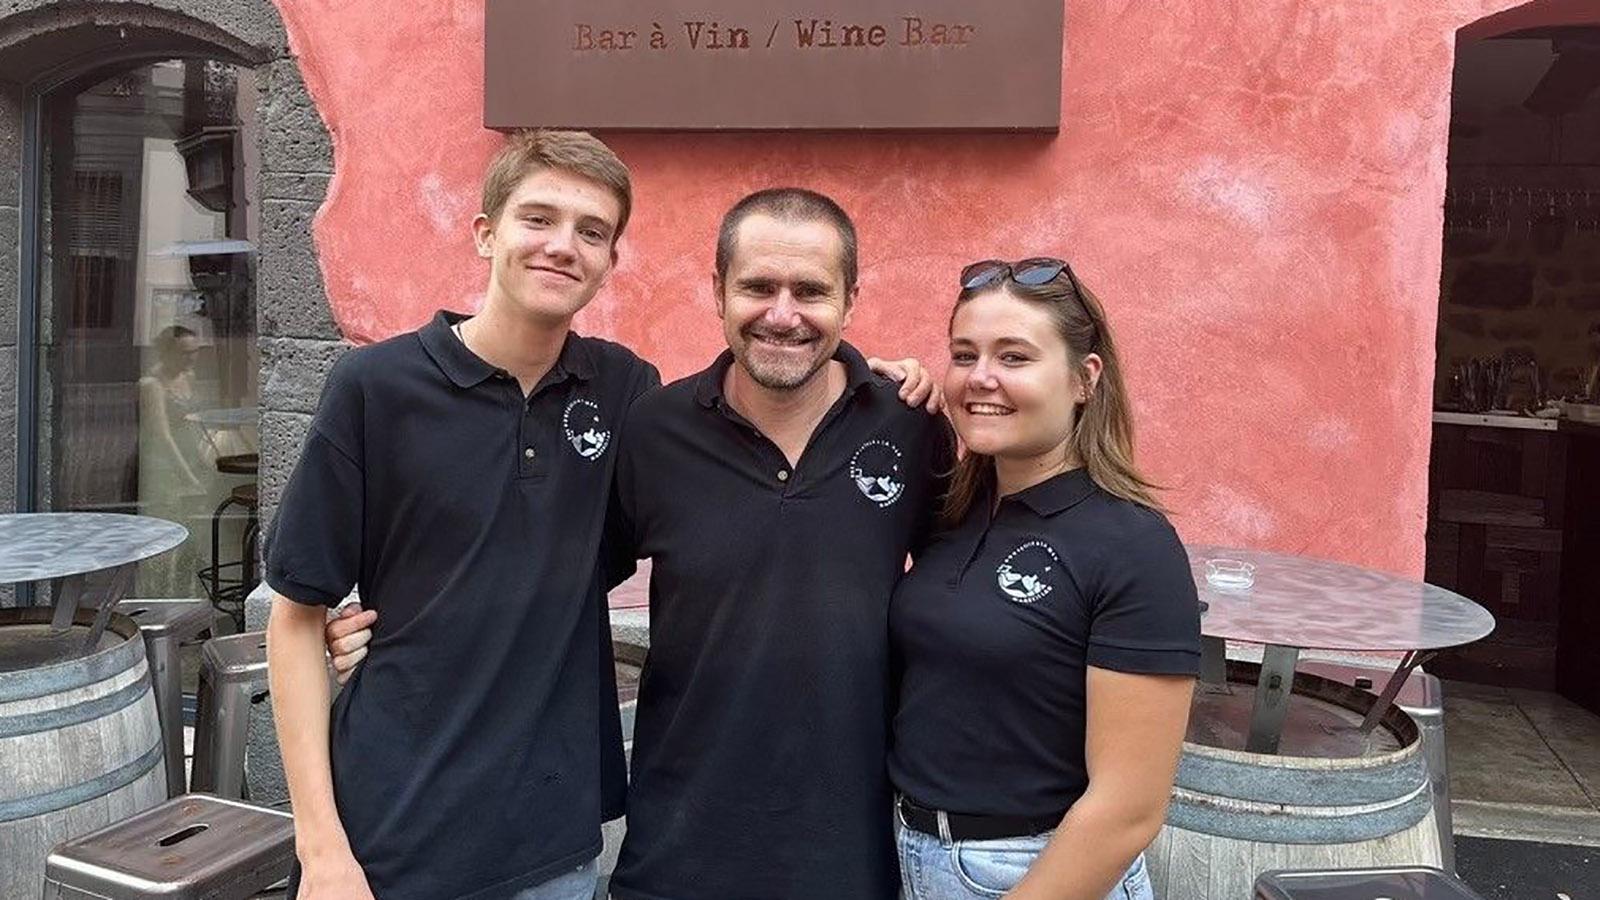 David Chauderlier und seine Kinder Emeline und Clément vor der Weinbar (Foto: privat)